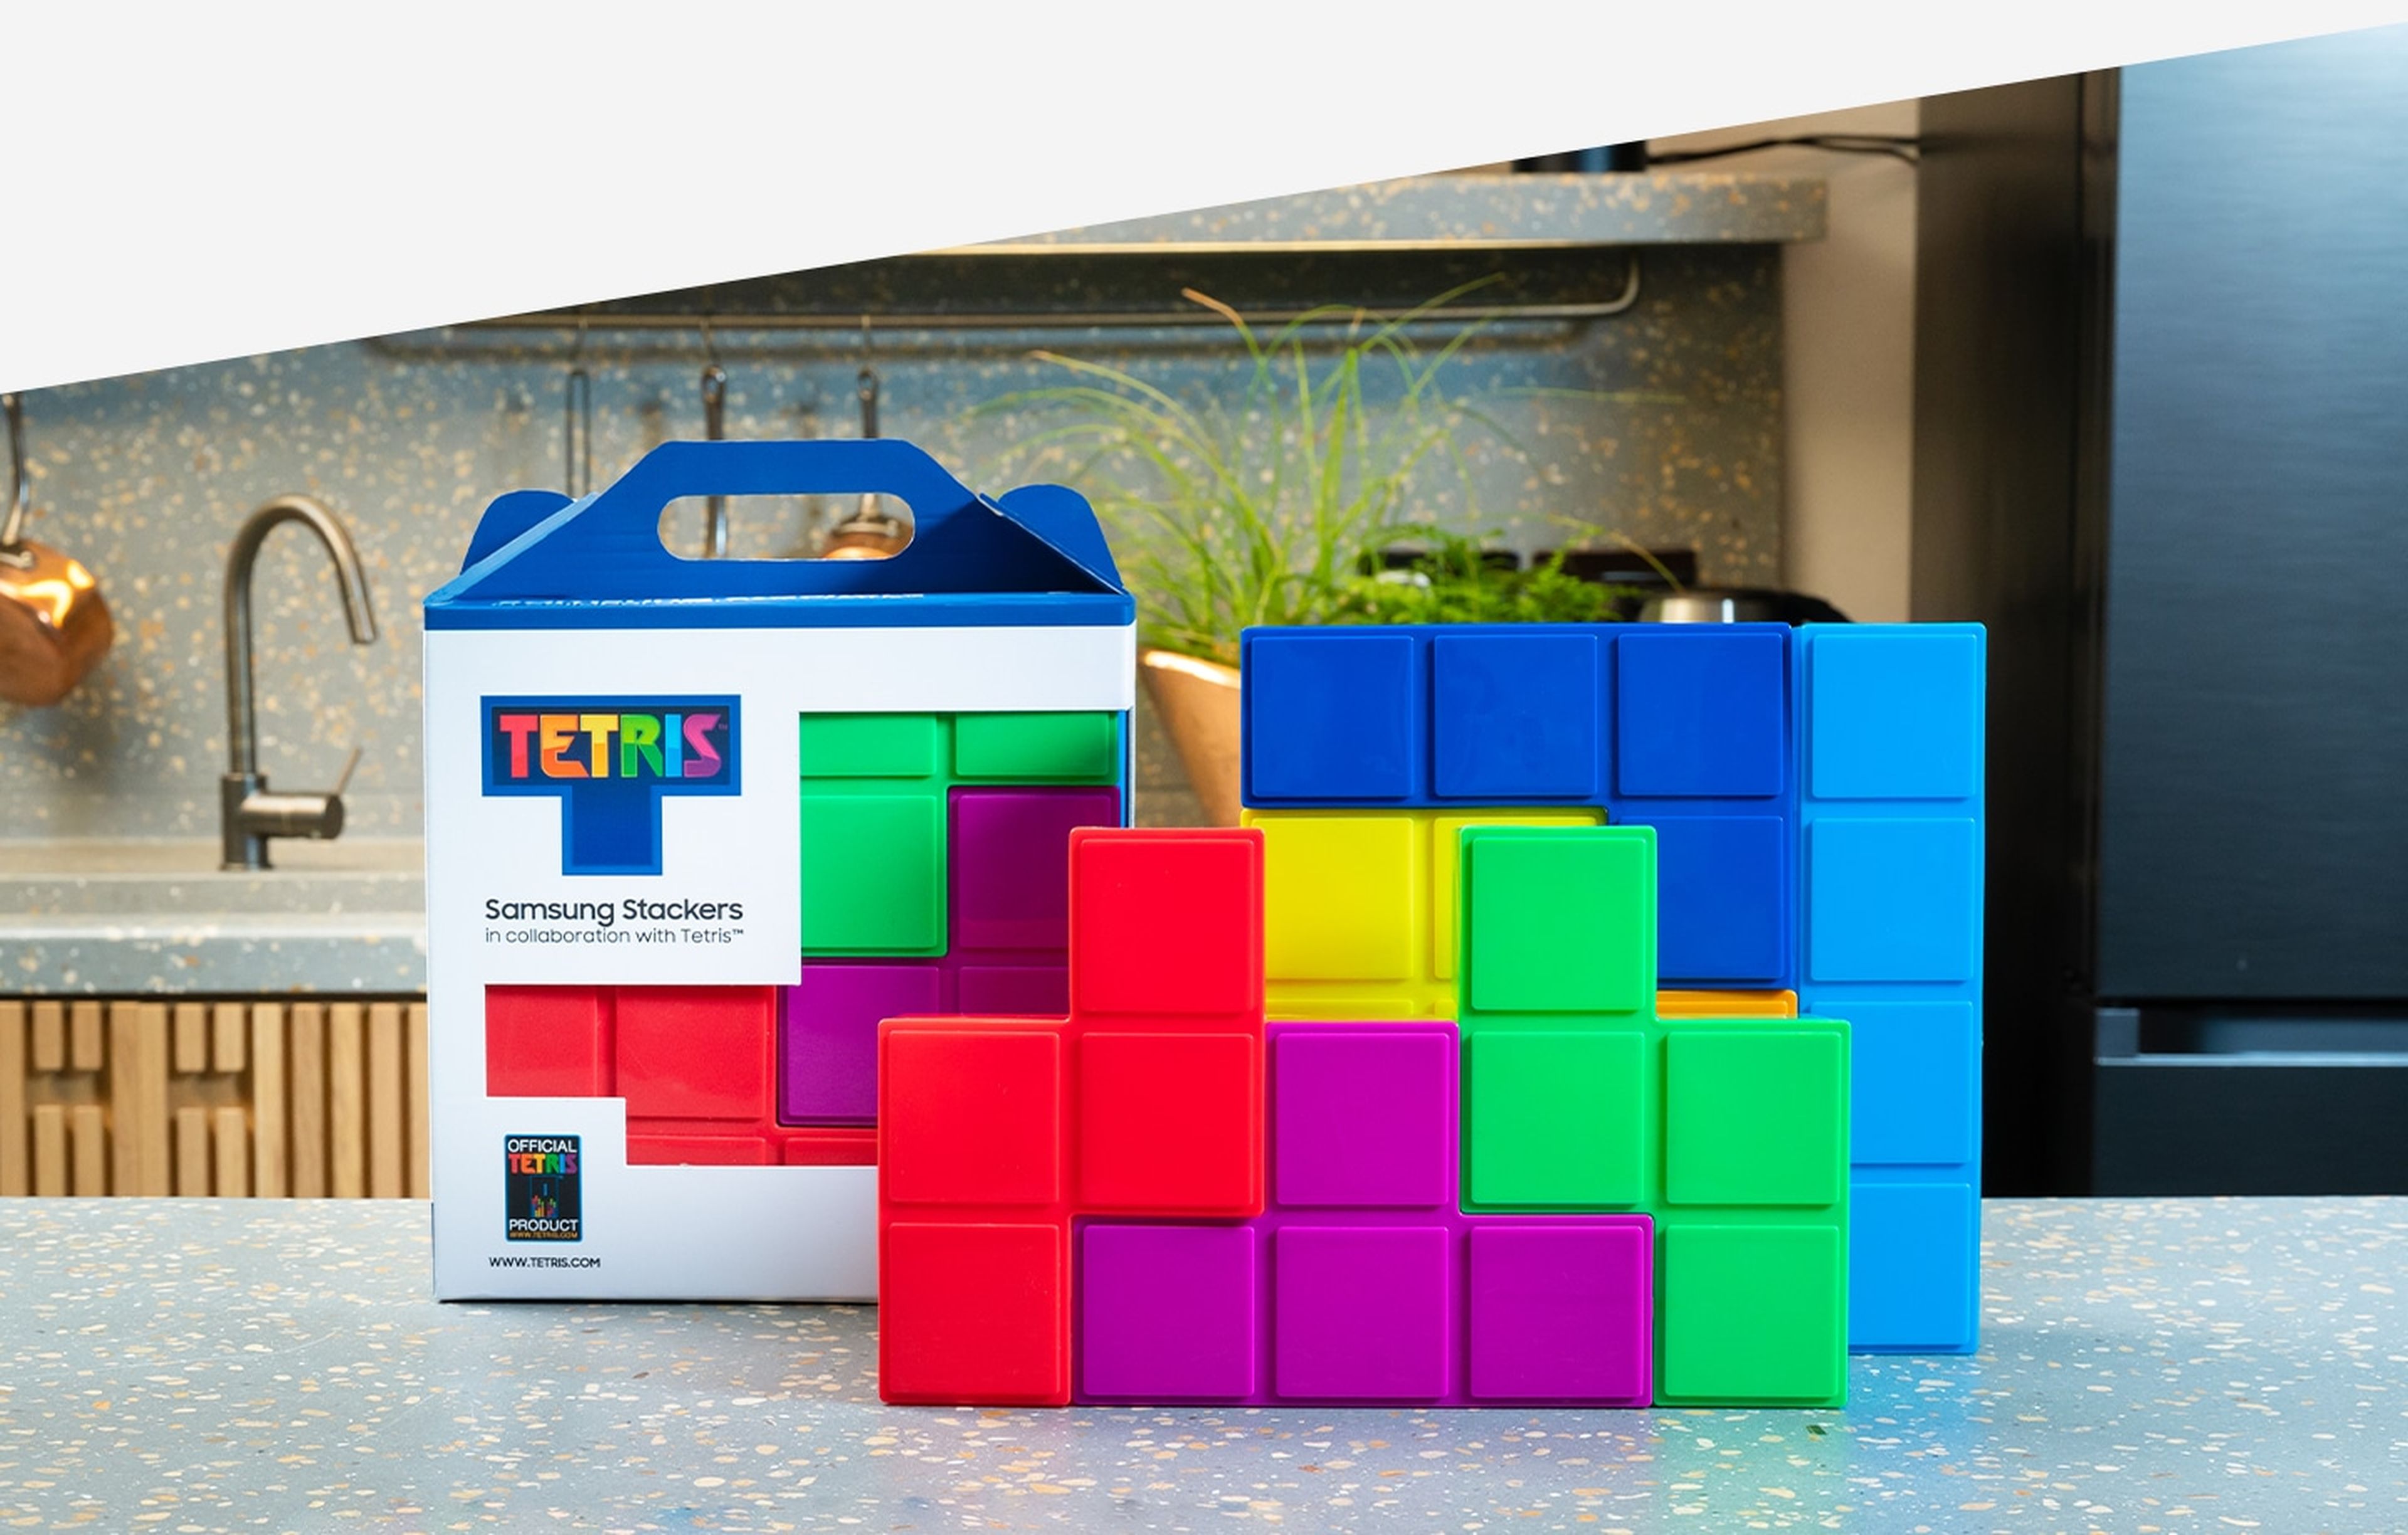 Samsung Tapers y Tetris